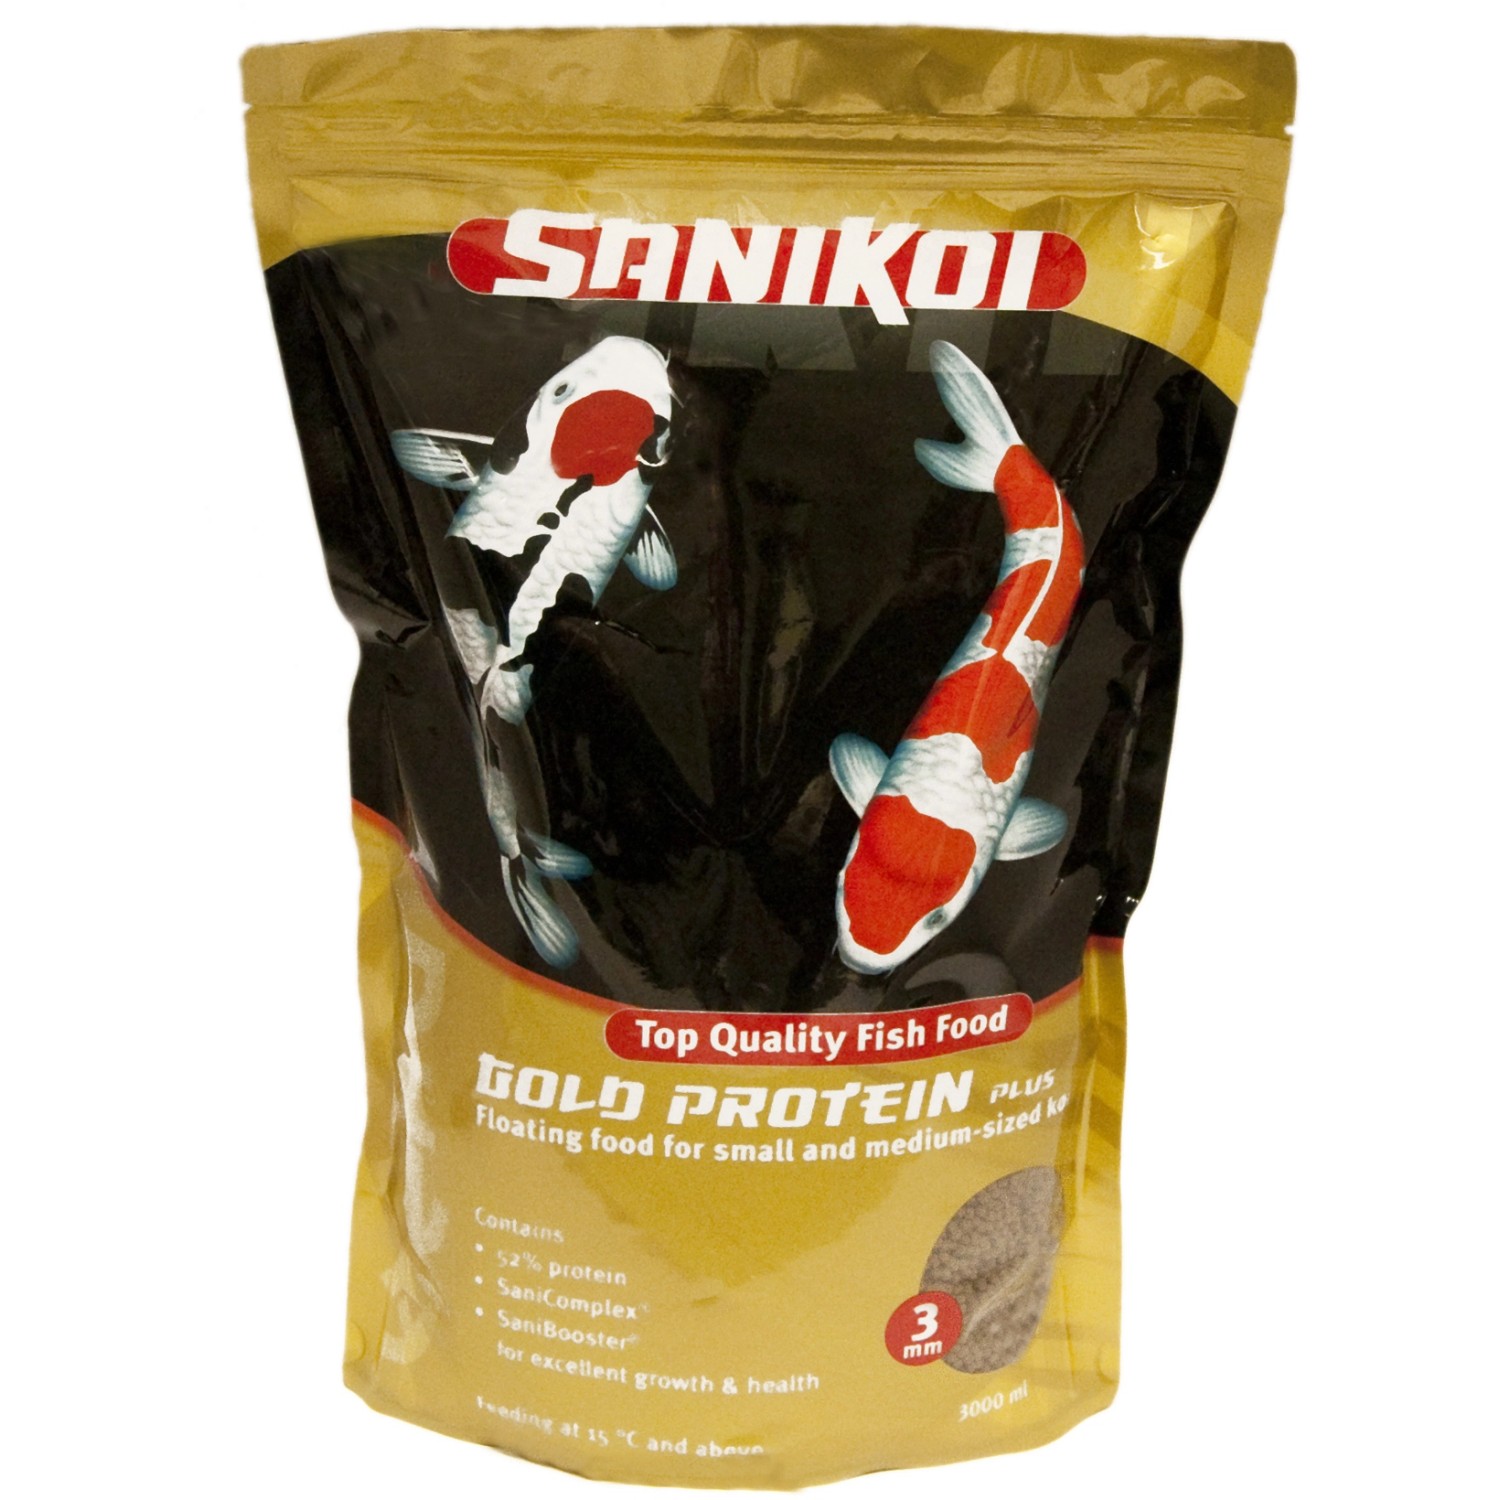 Velda Fischfutter SaniKoi Gold Protein Plus 3 mm 3 l